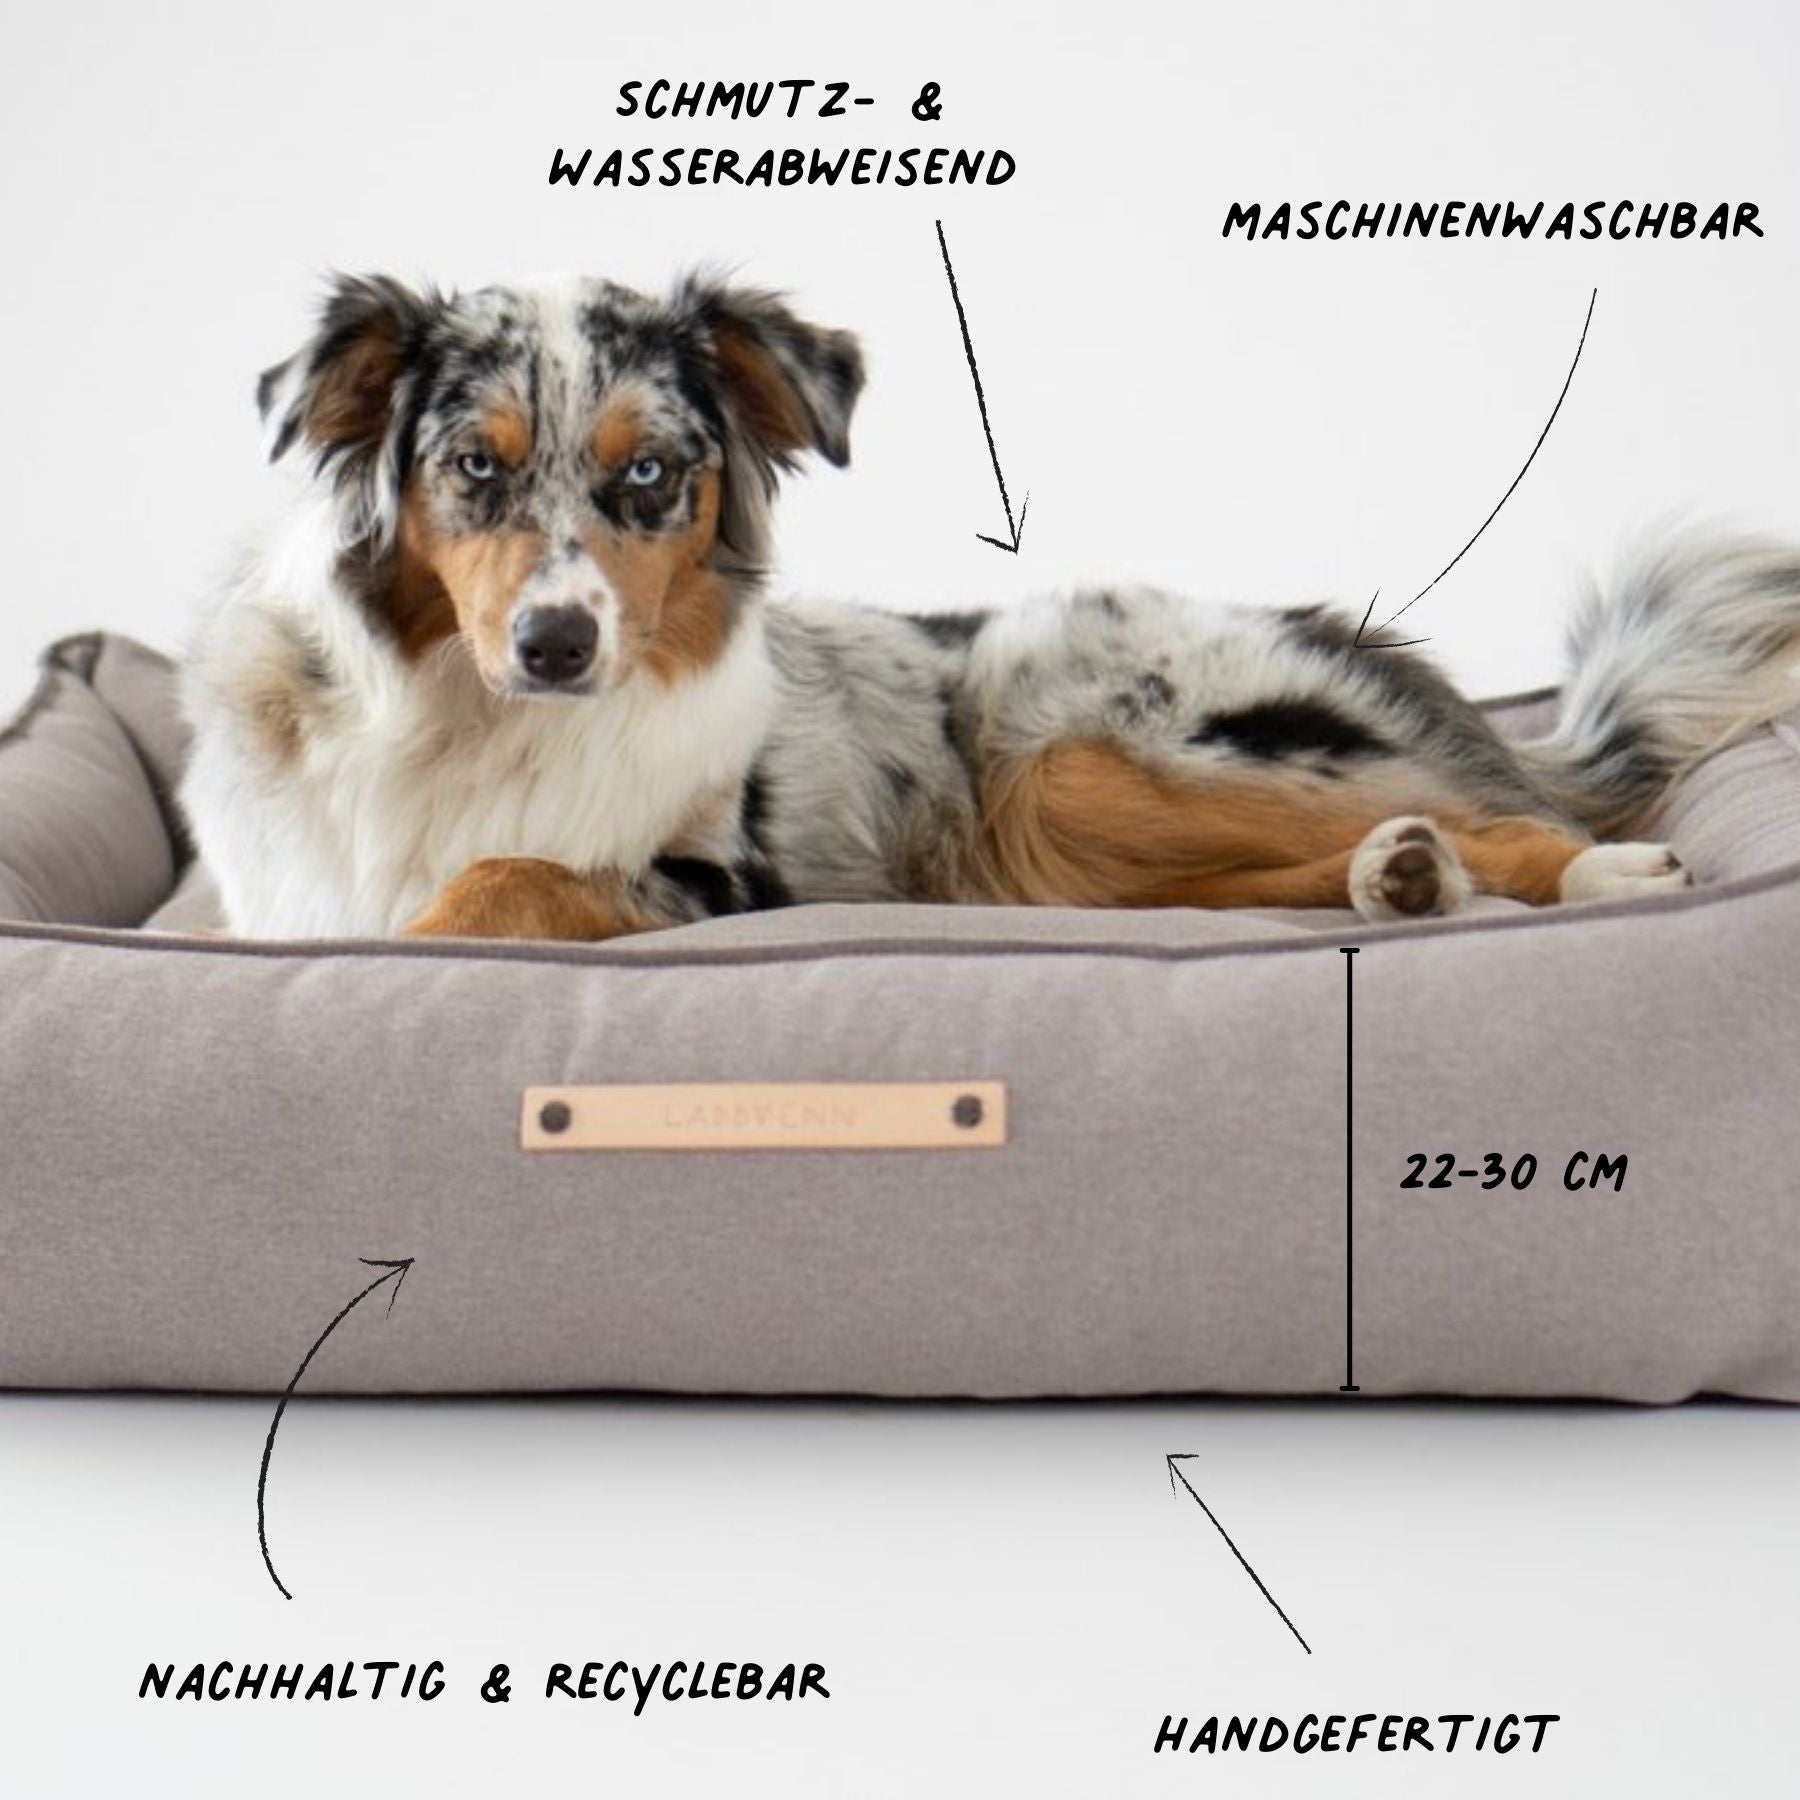 Dieses Bild zeigt ein Hundebett im nordischen Stil von LABBVENN. Es heißt Töve und ist in drei Größen erhältlich. Das Bett wird für deinen Hund in sorgfältiger Handarbeit hergestellt, ist nachhaltig und sehr luxuriös. Dies ist die Farbe Nut.